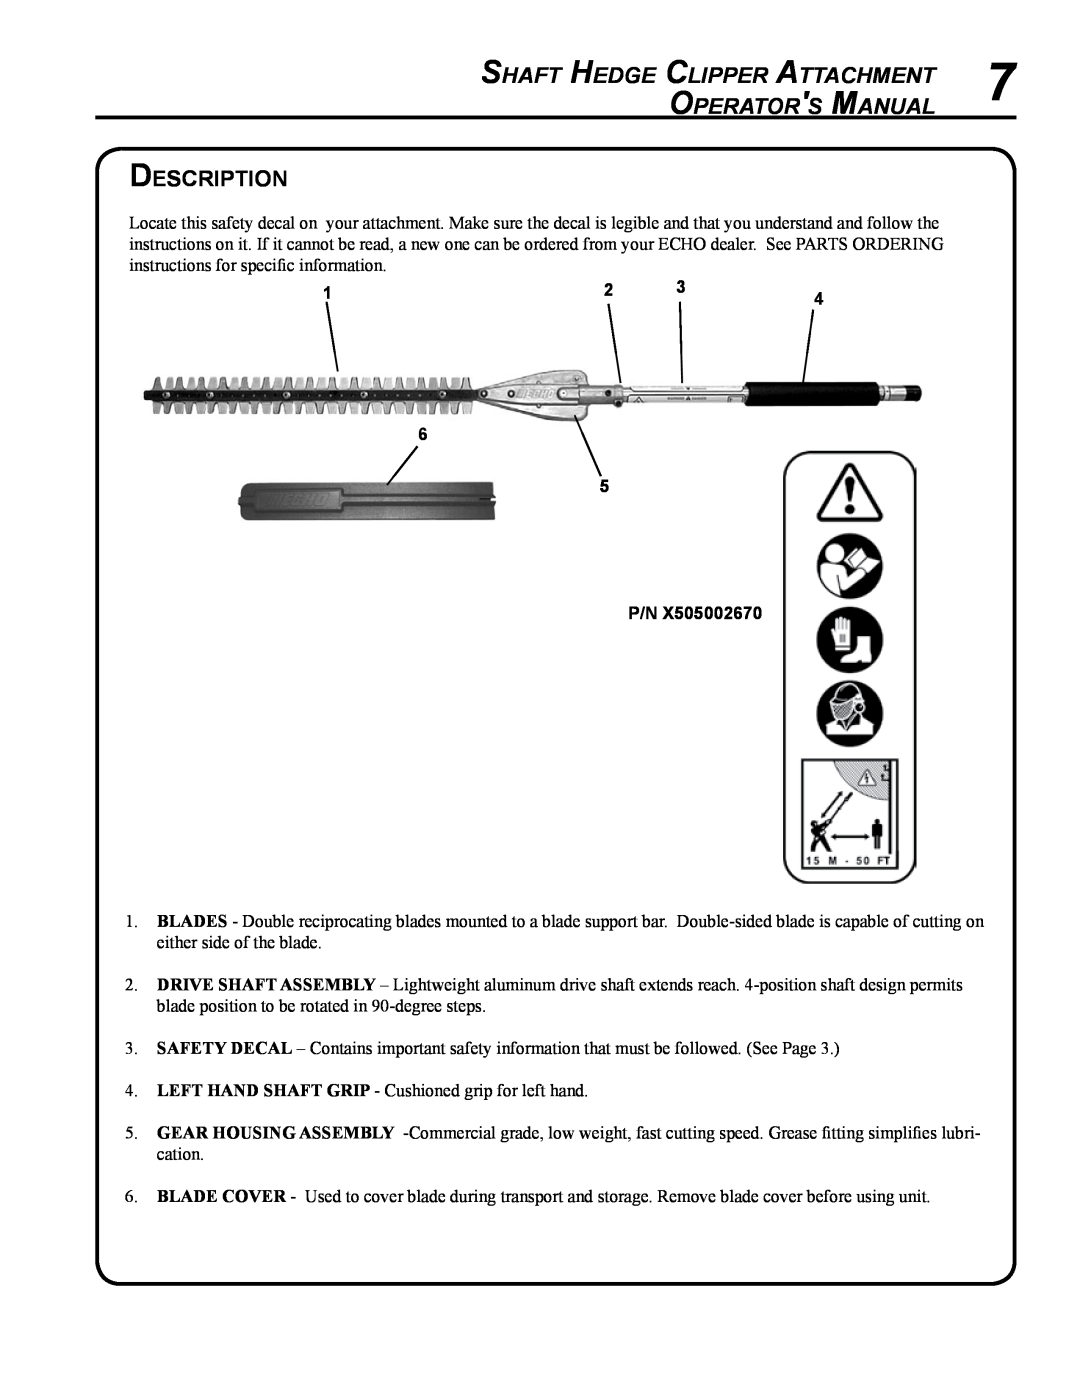 Echo 99944200485 manual Shaft Hedge Clipper Attachment, Operator s Manual, Description 